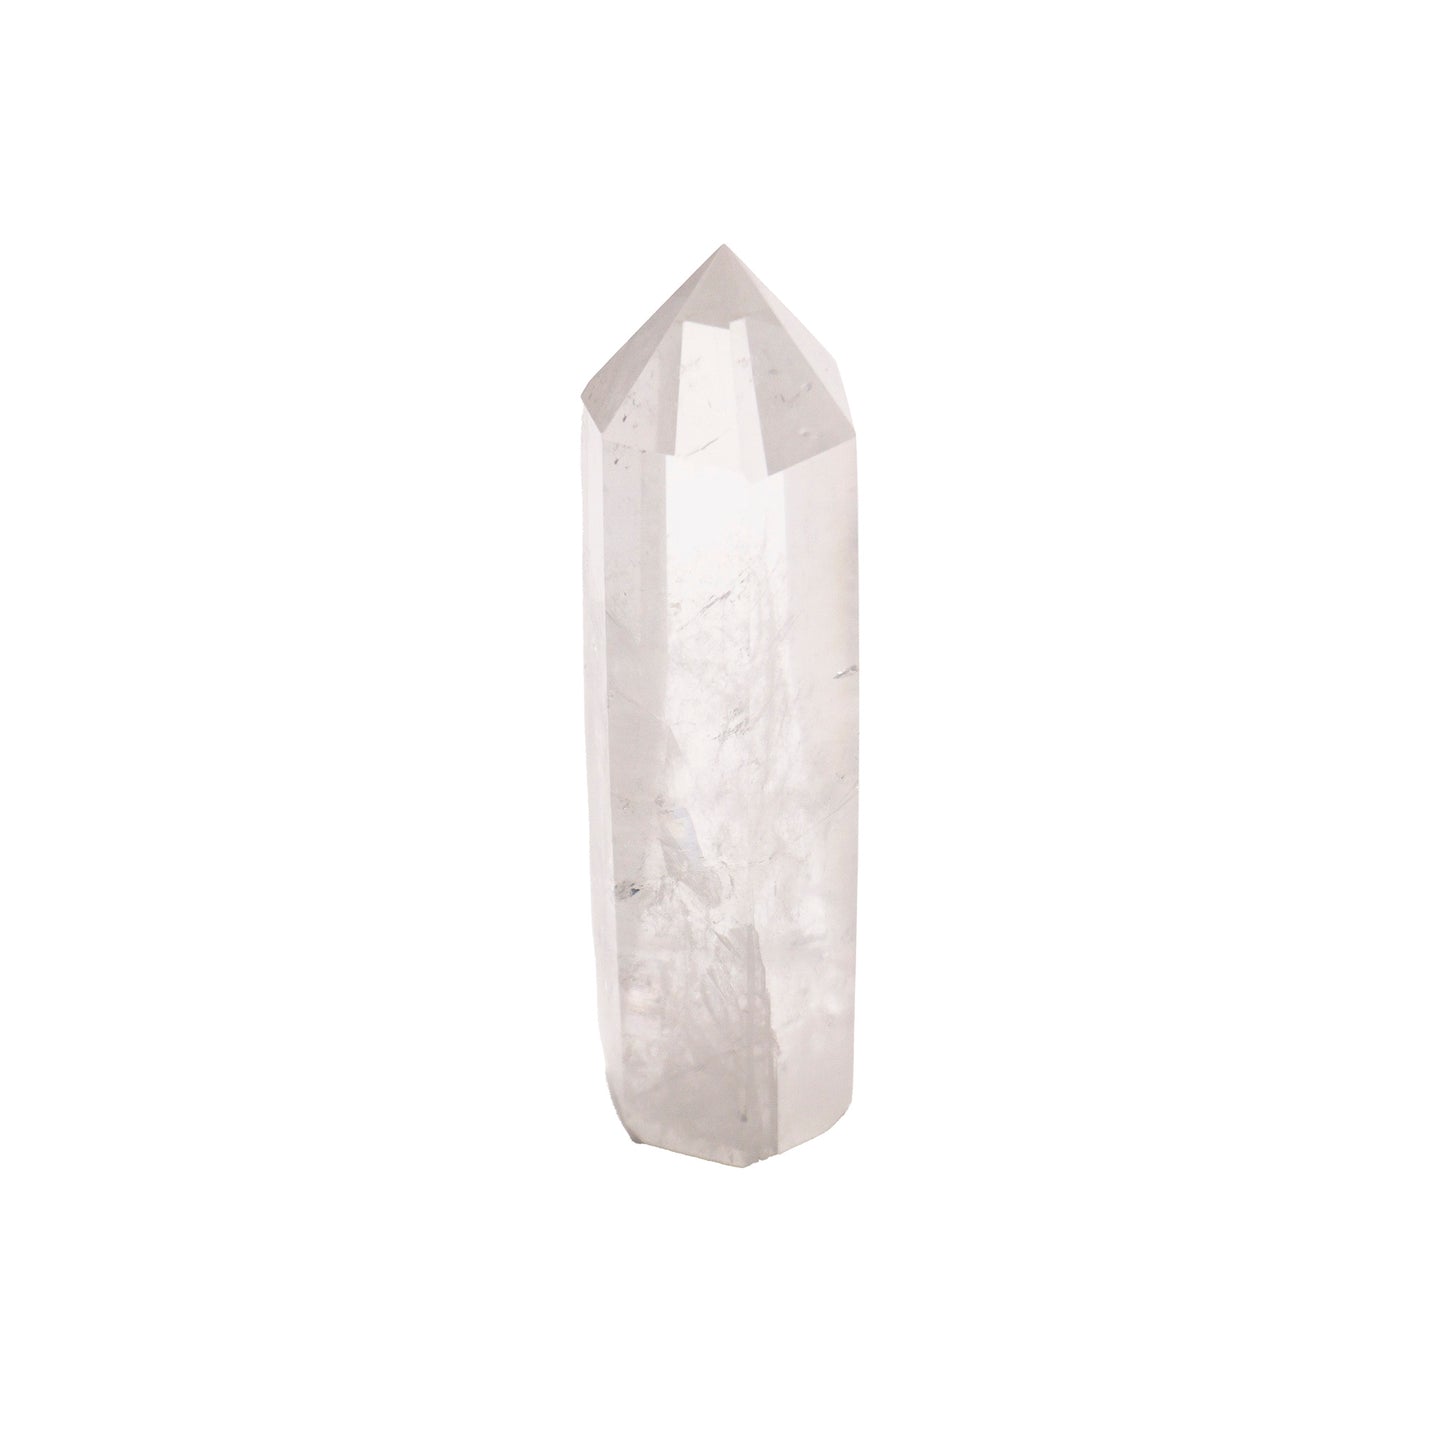 obelisk of clear quartz crystal